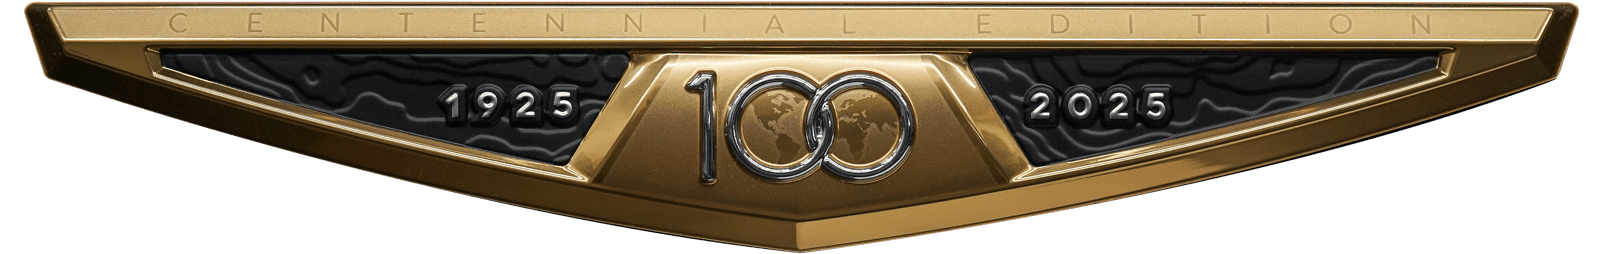 Nautique 100 Year Badge